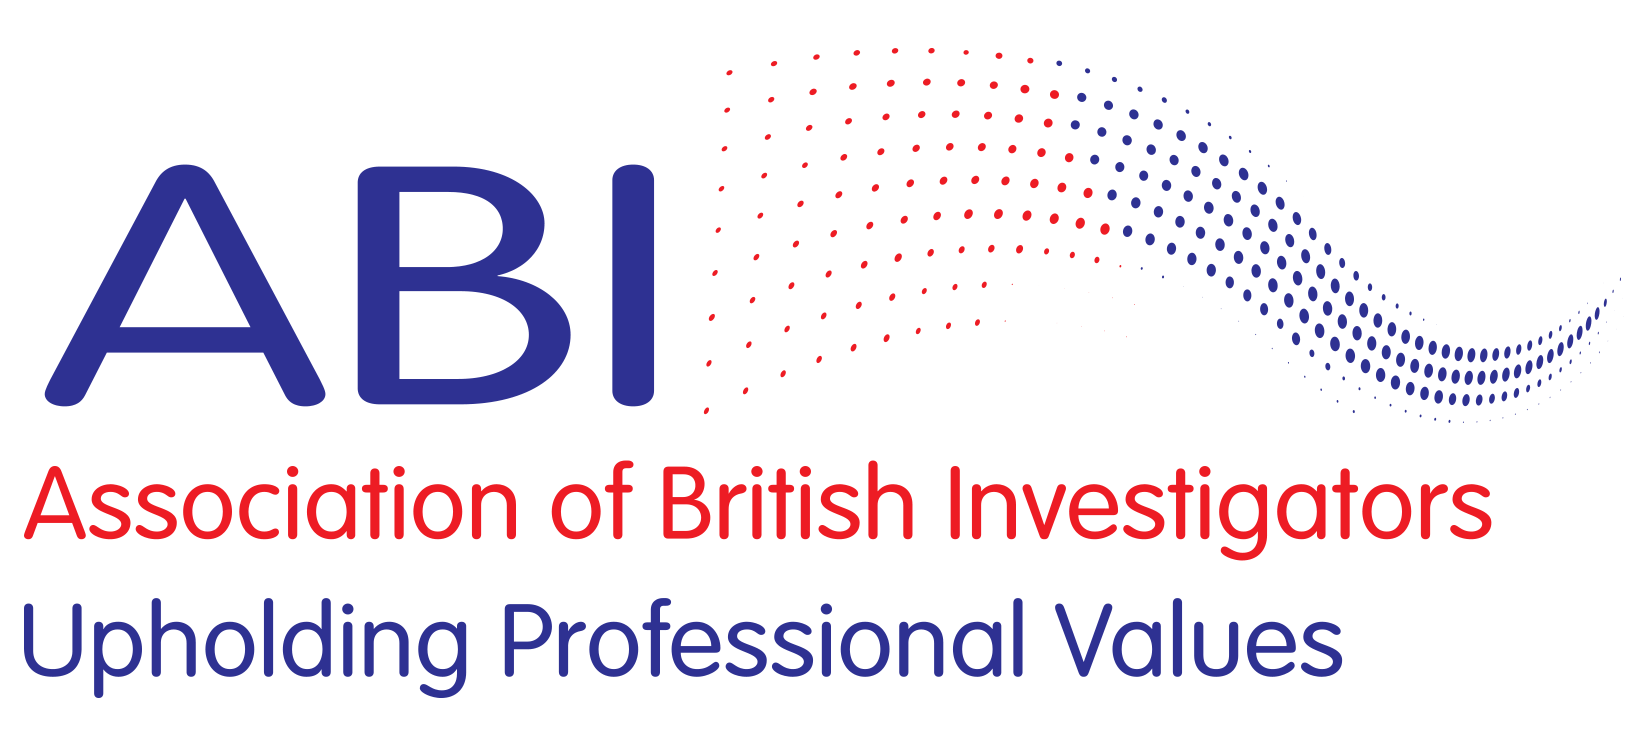 Association of British Investigators (ABI)